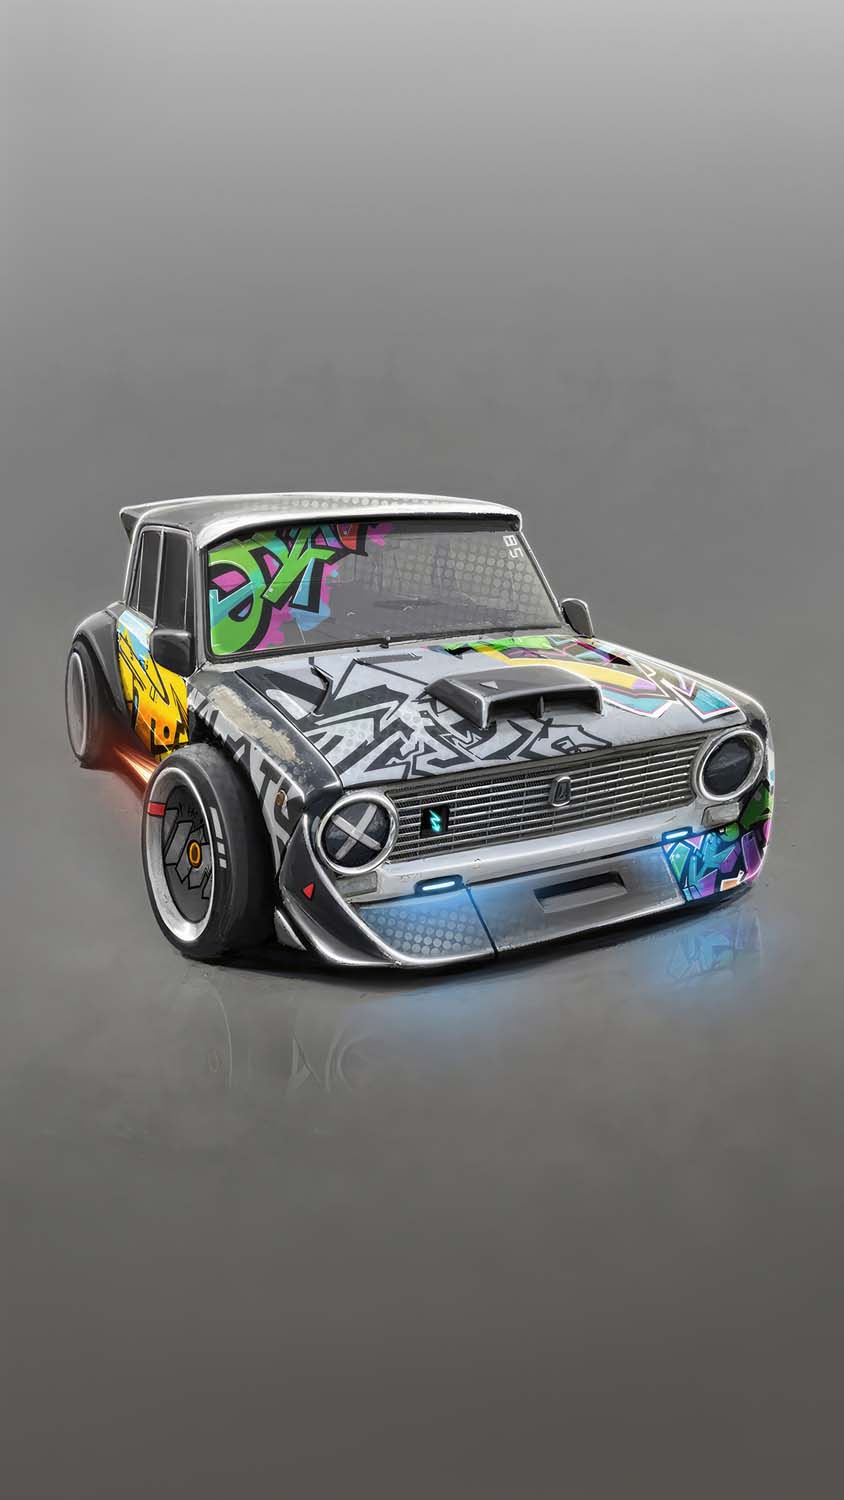 Urban wheels mini graffiti car iPhone Wallpaper